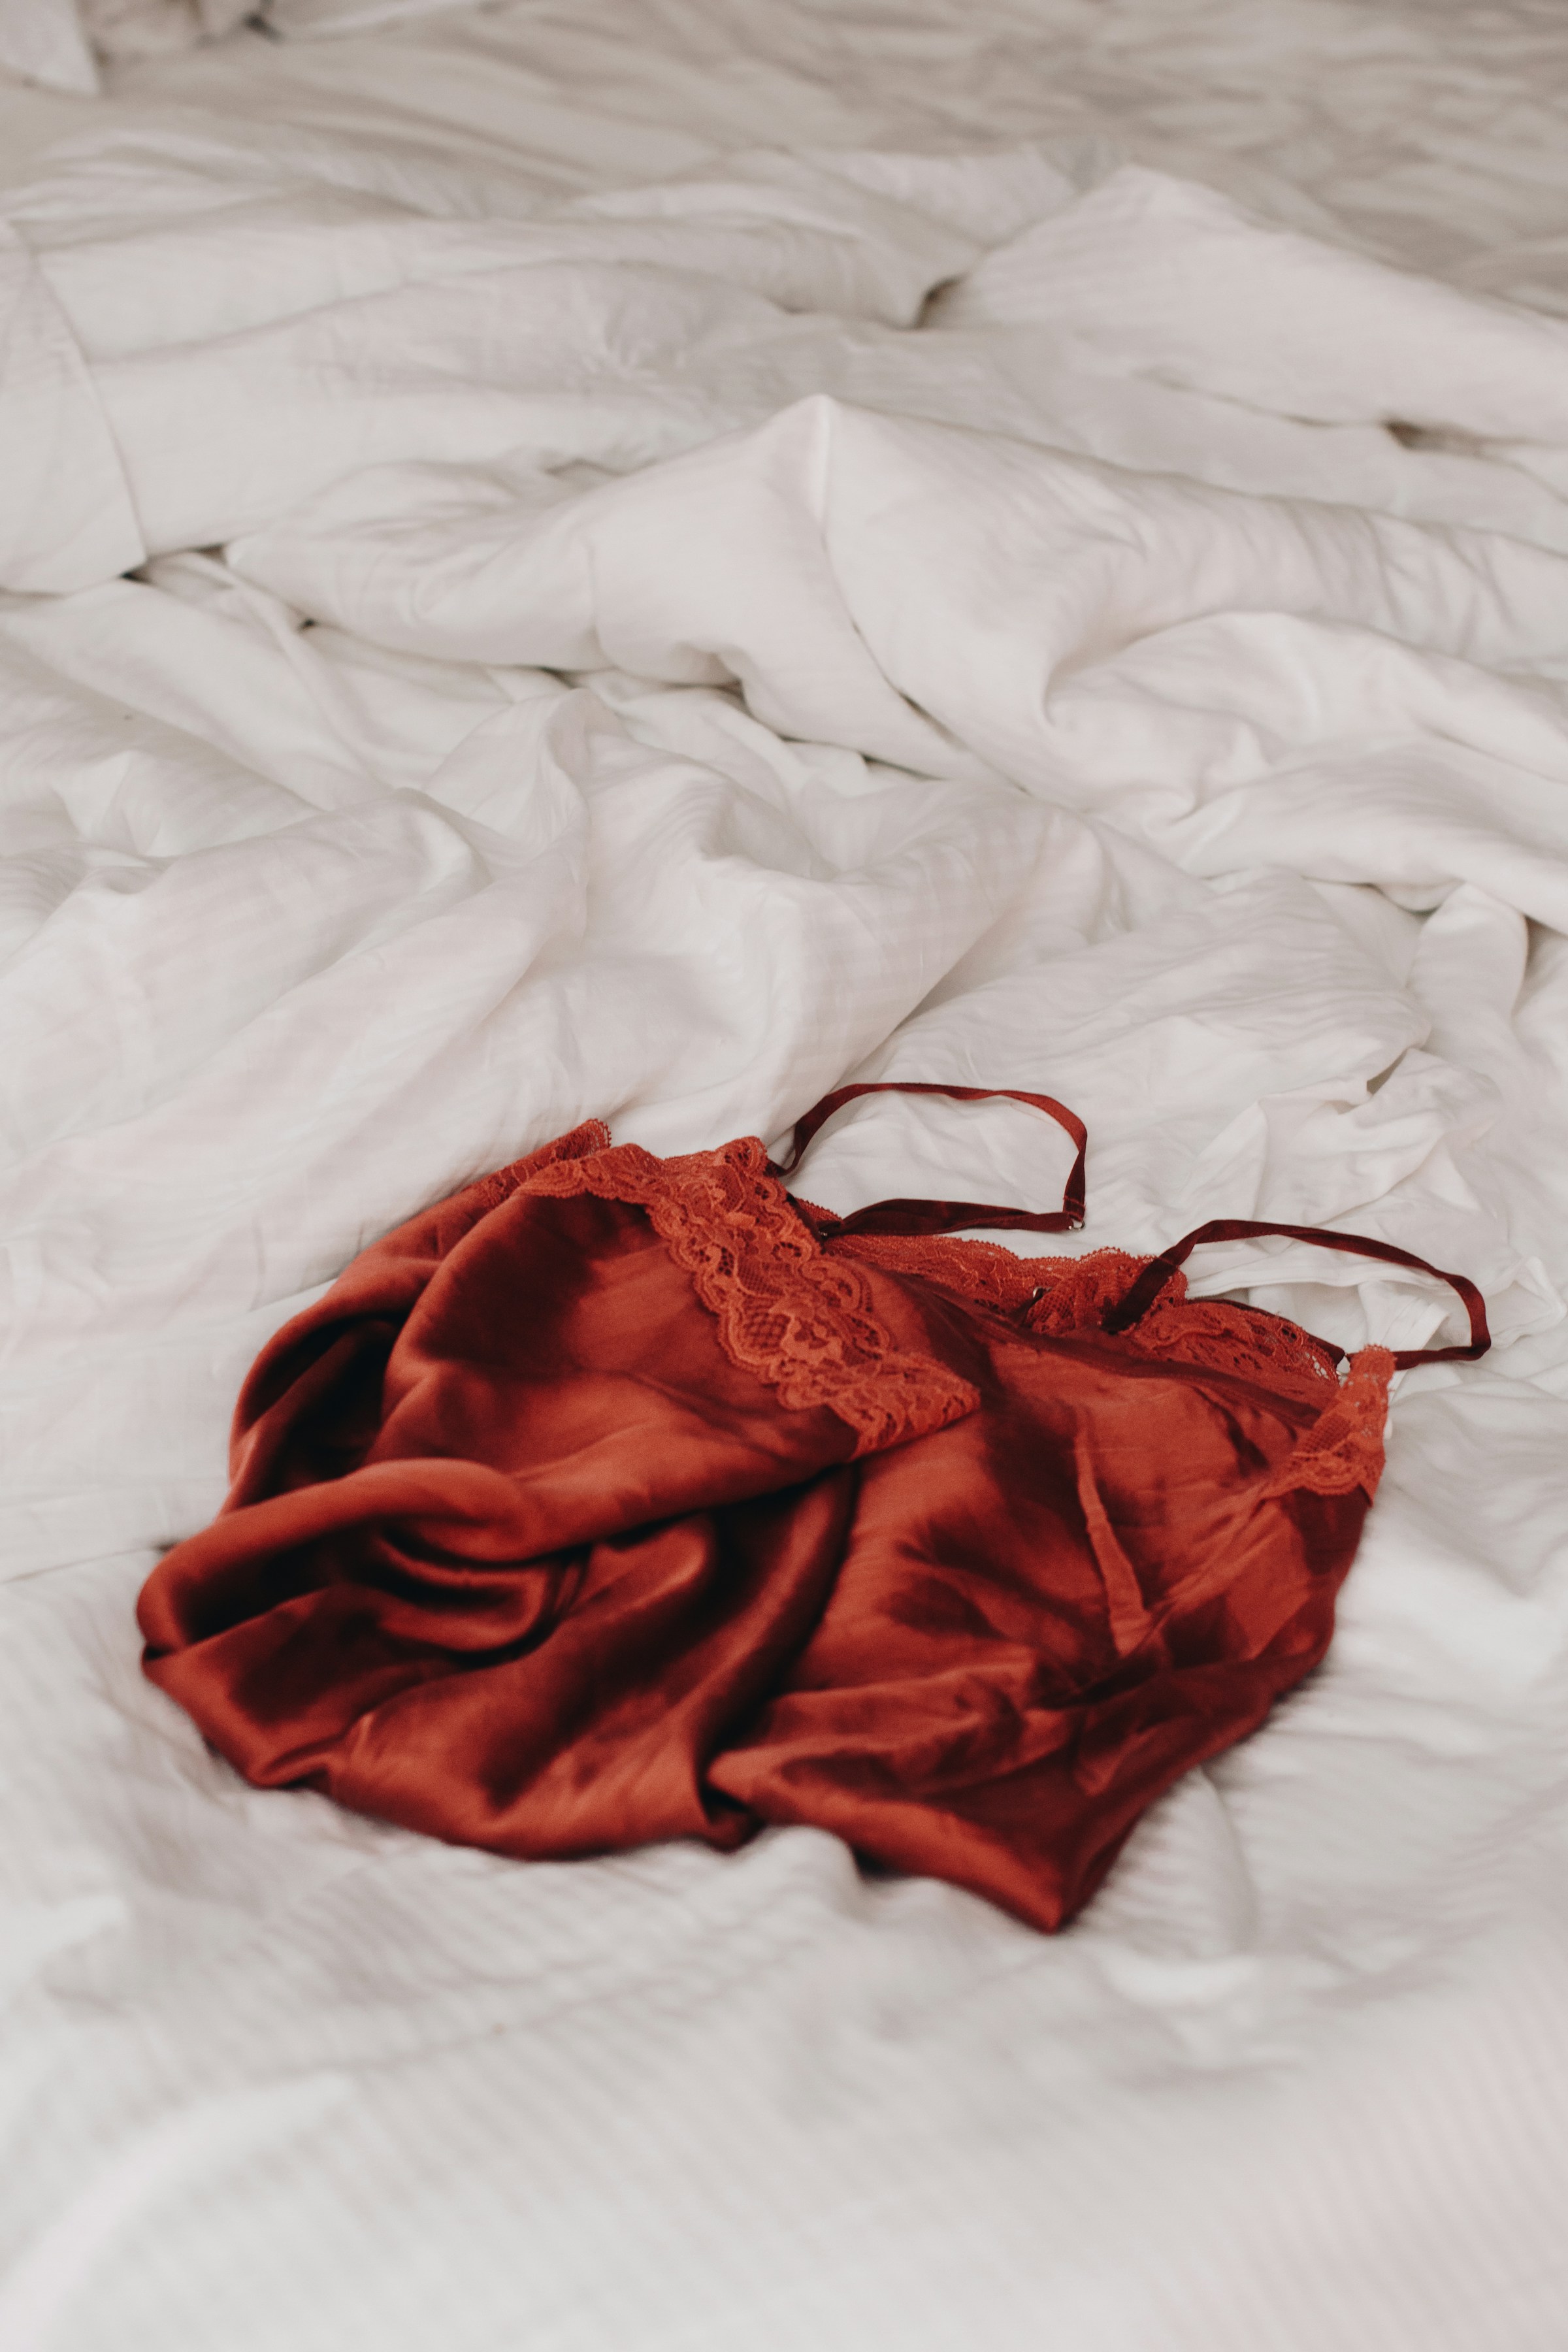 Lencería de encaje rojo tendida sobre sábanas de lino blanco | Fuente: Unsplash